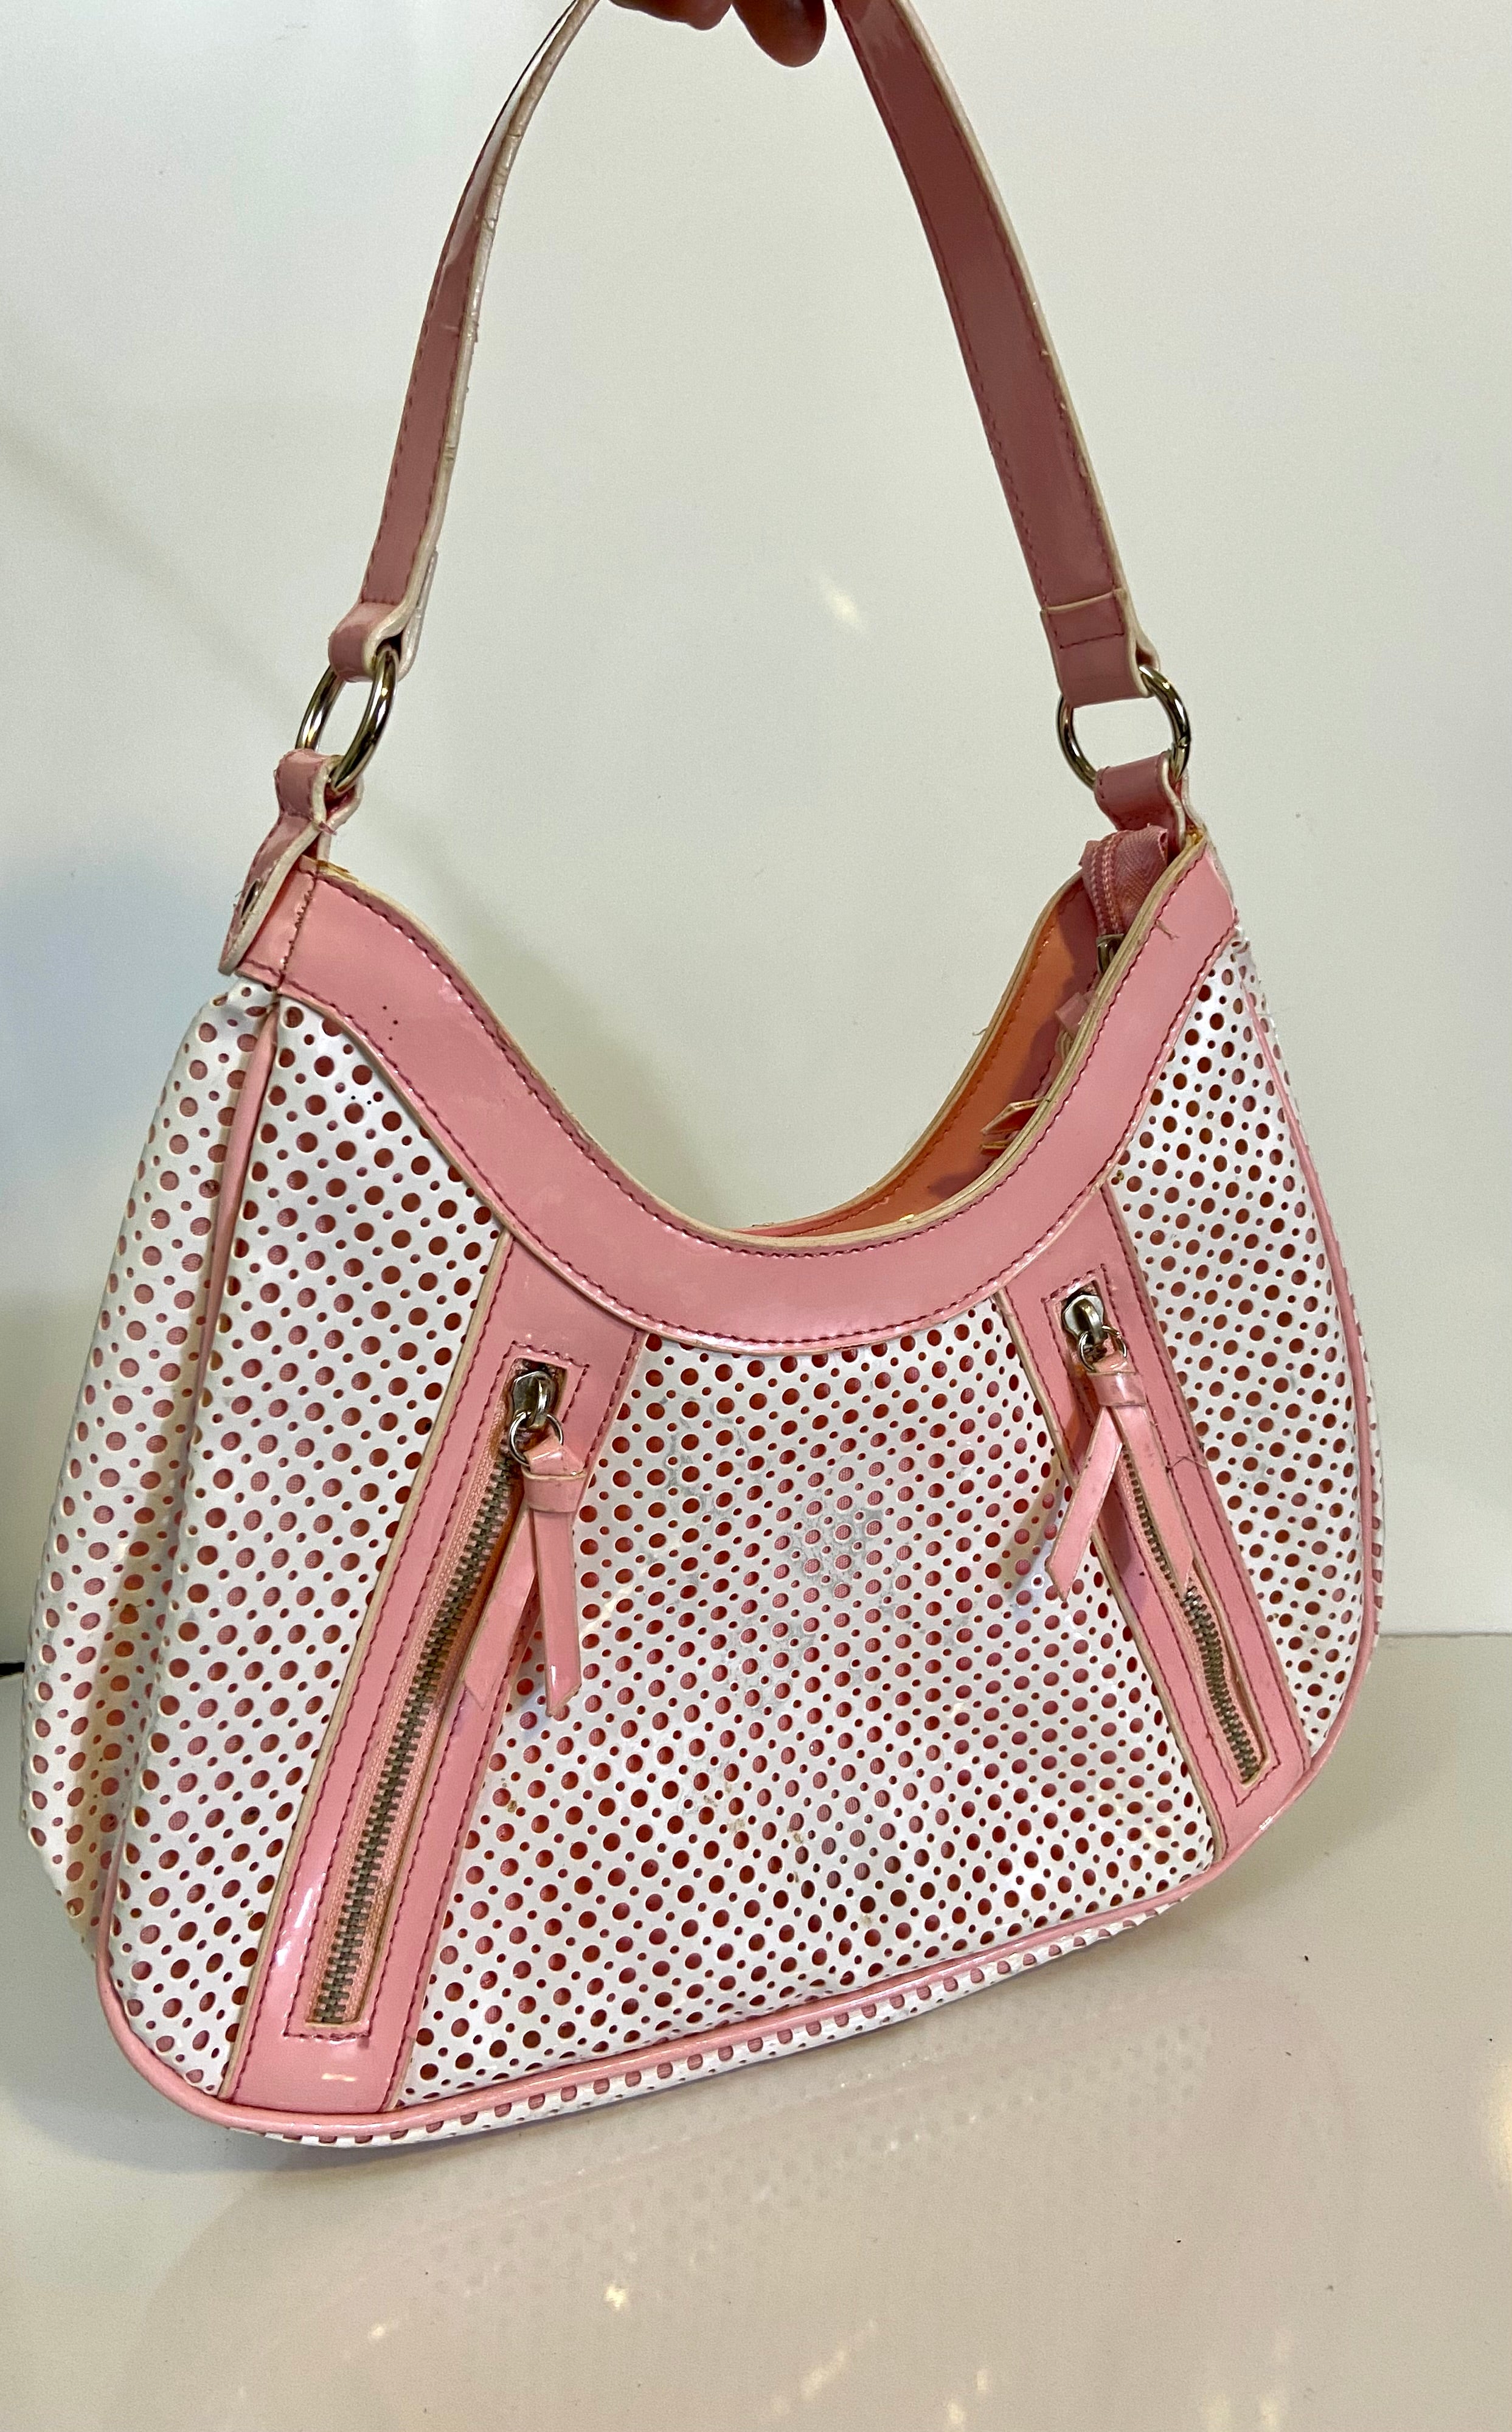 Little pinky purse